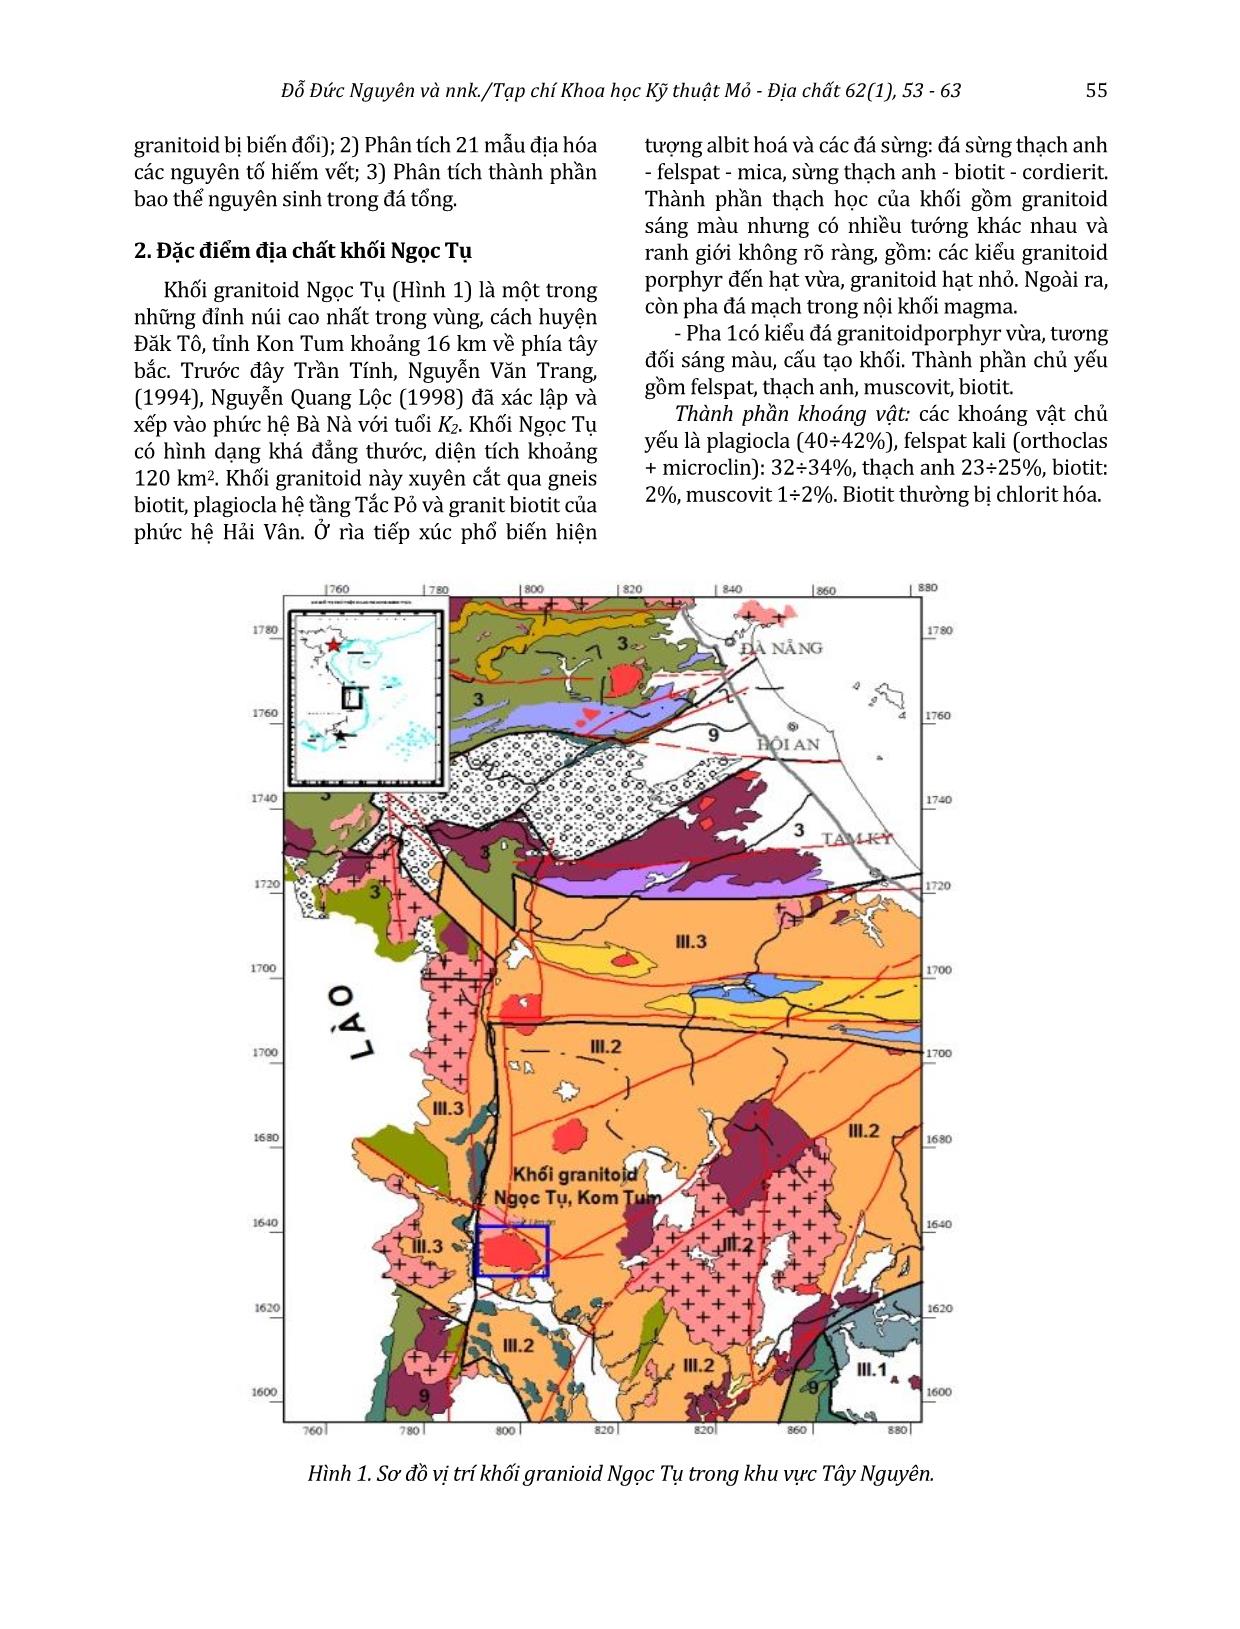 Đặc tính môi trường oxy hóa - khử của granitoid khối Ngọc Tụ và tính chuyên hóa địa hóa của chúng trang 3